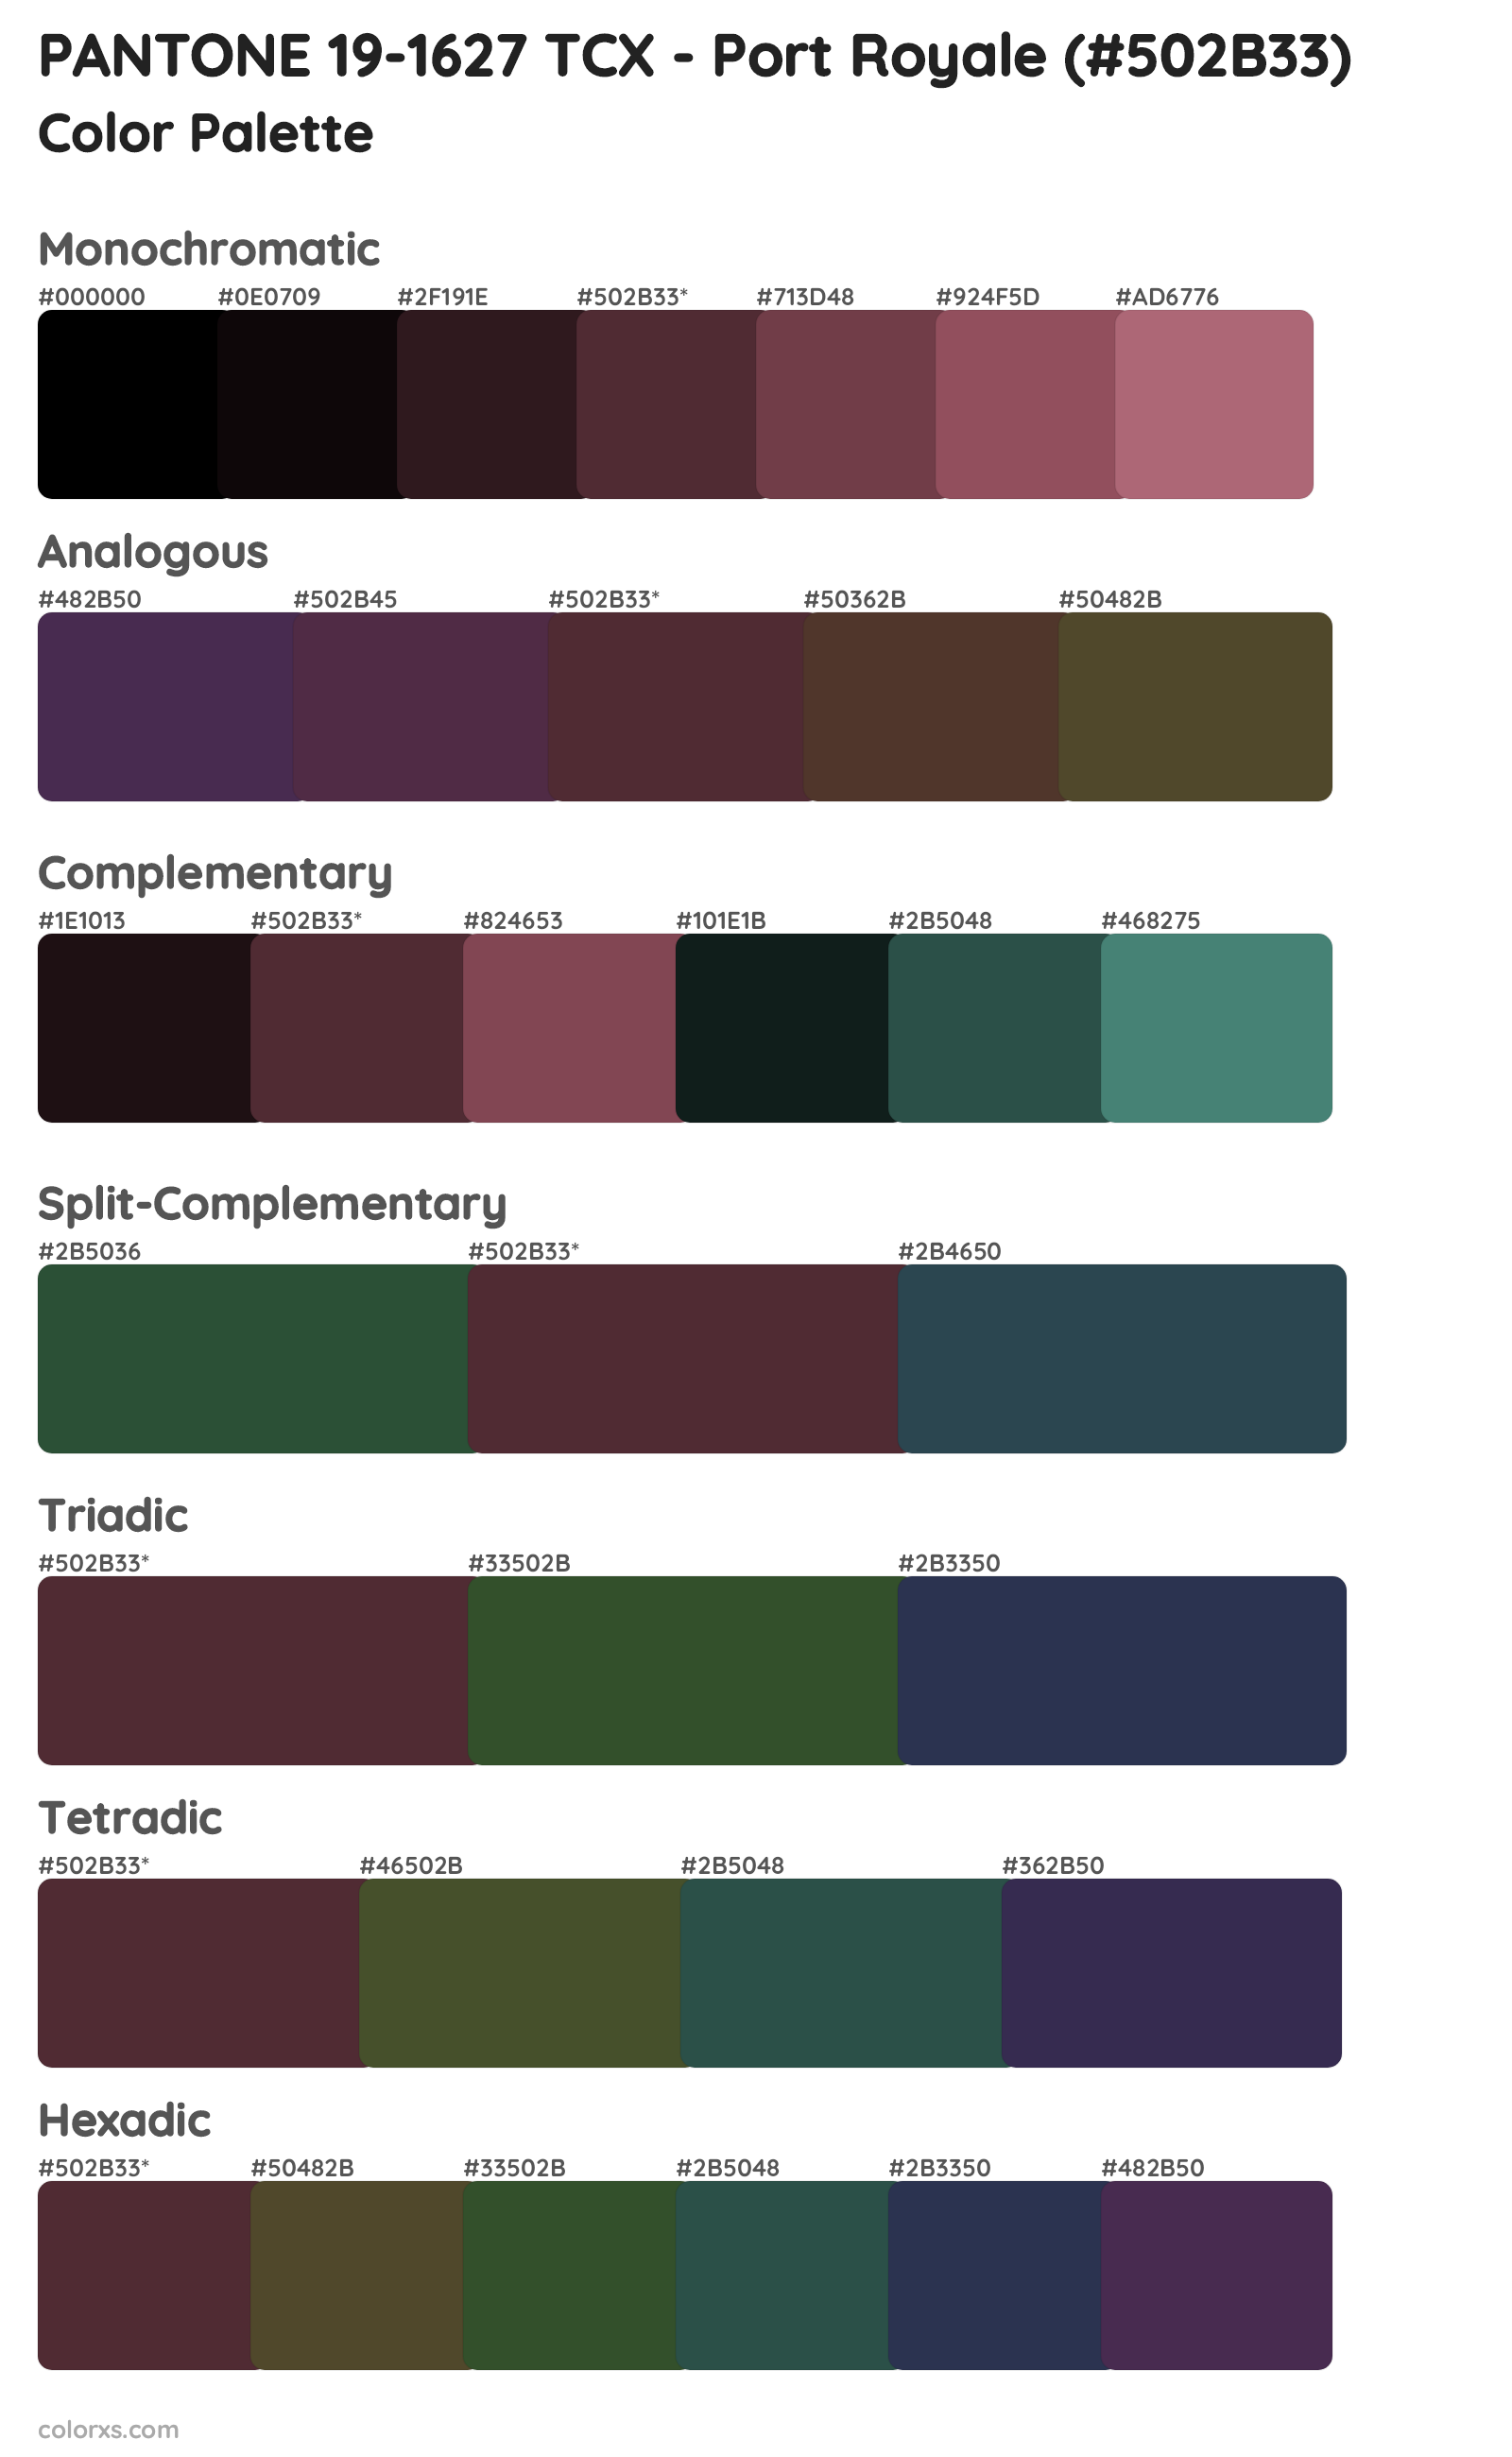 PANTONE 19-1627 TCX - Port Royale Color Scheme Palettes